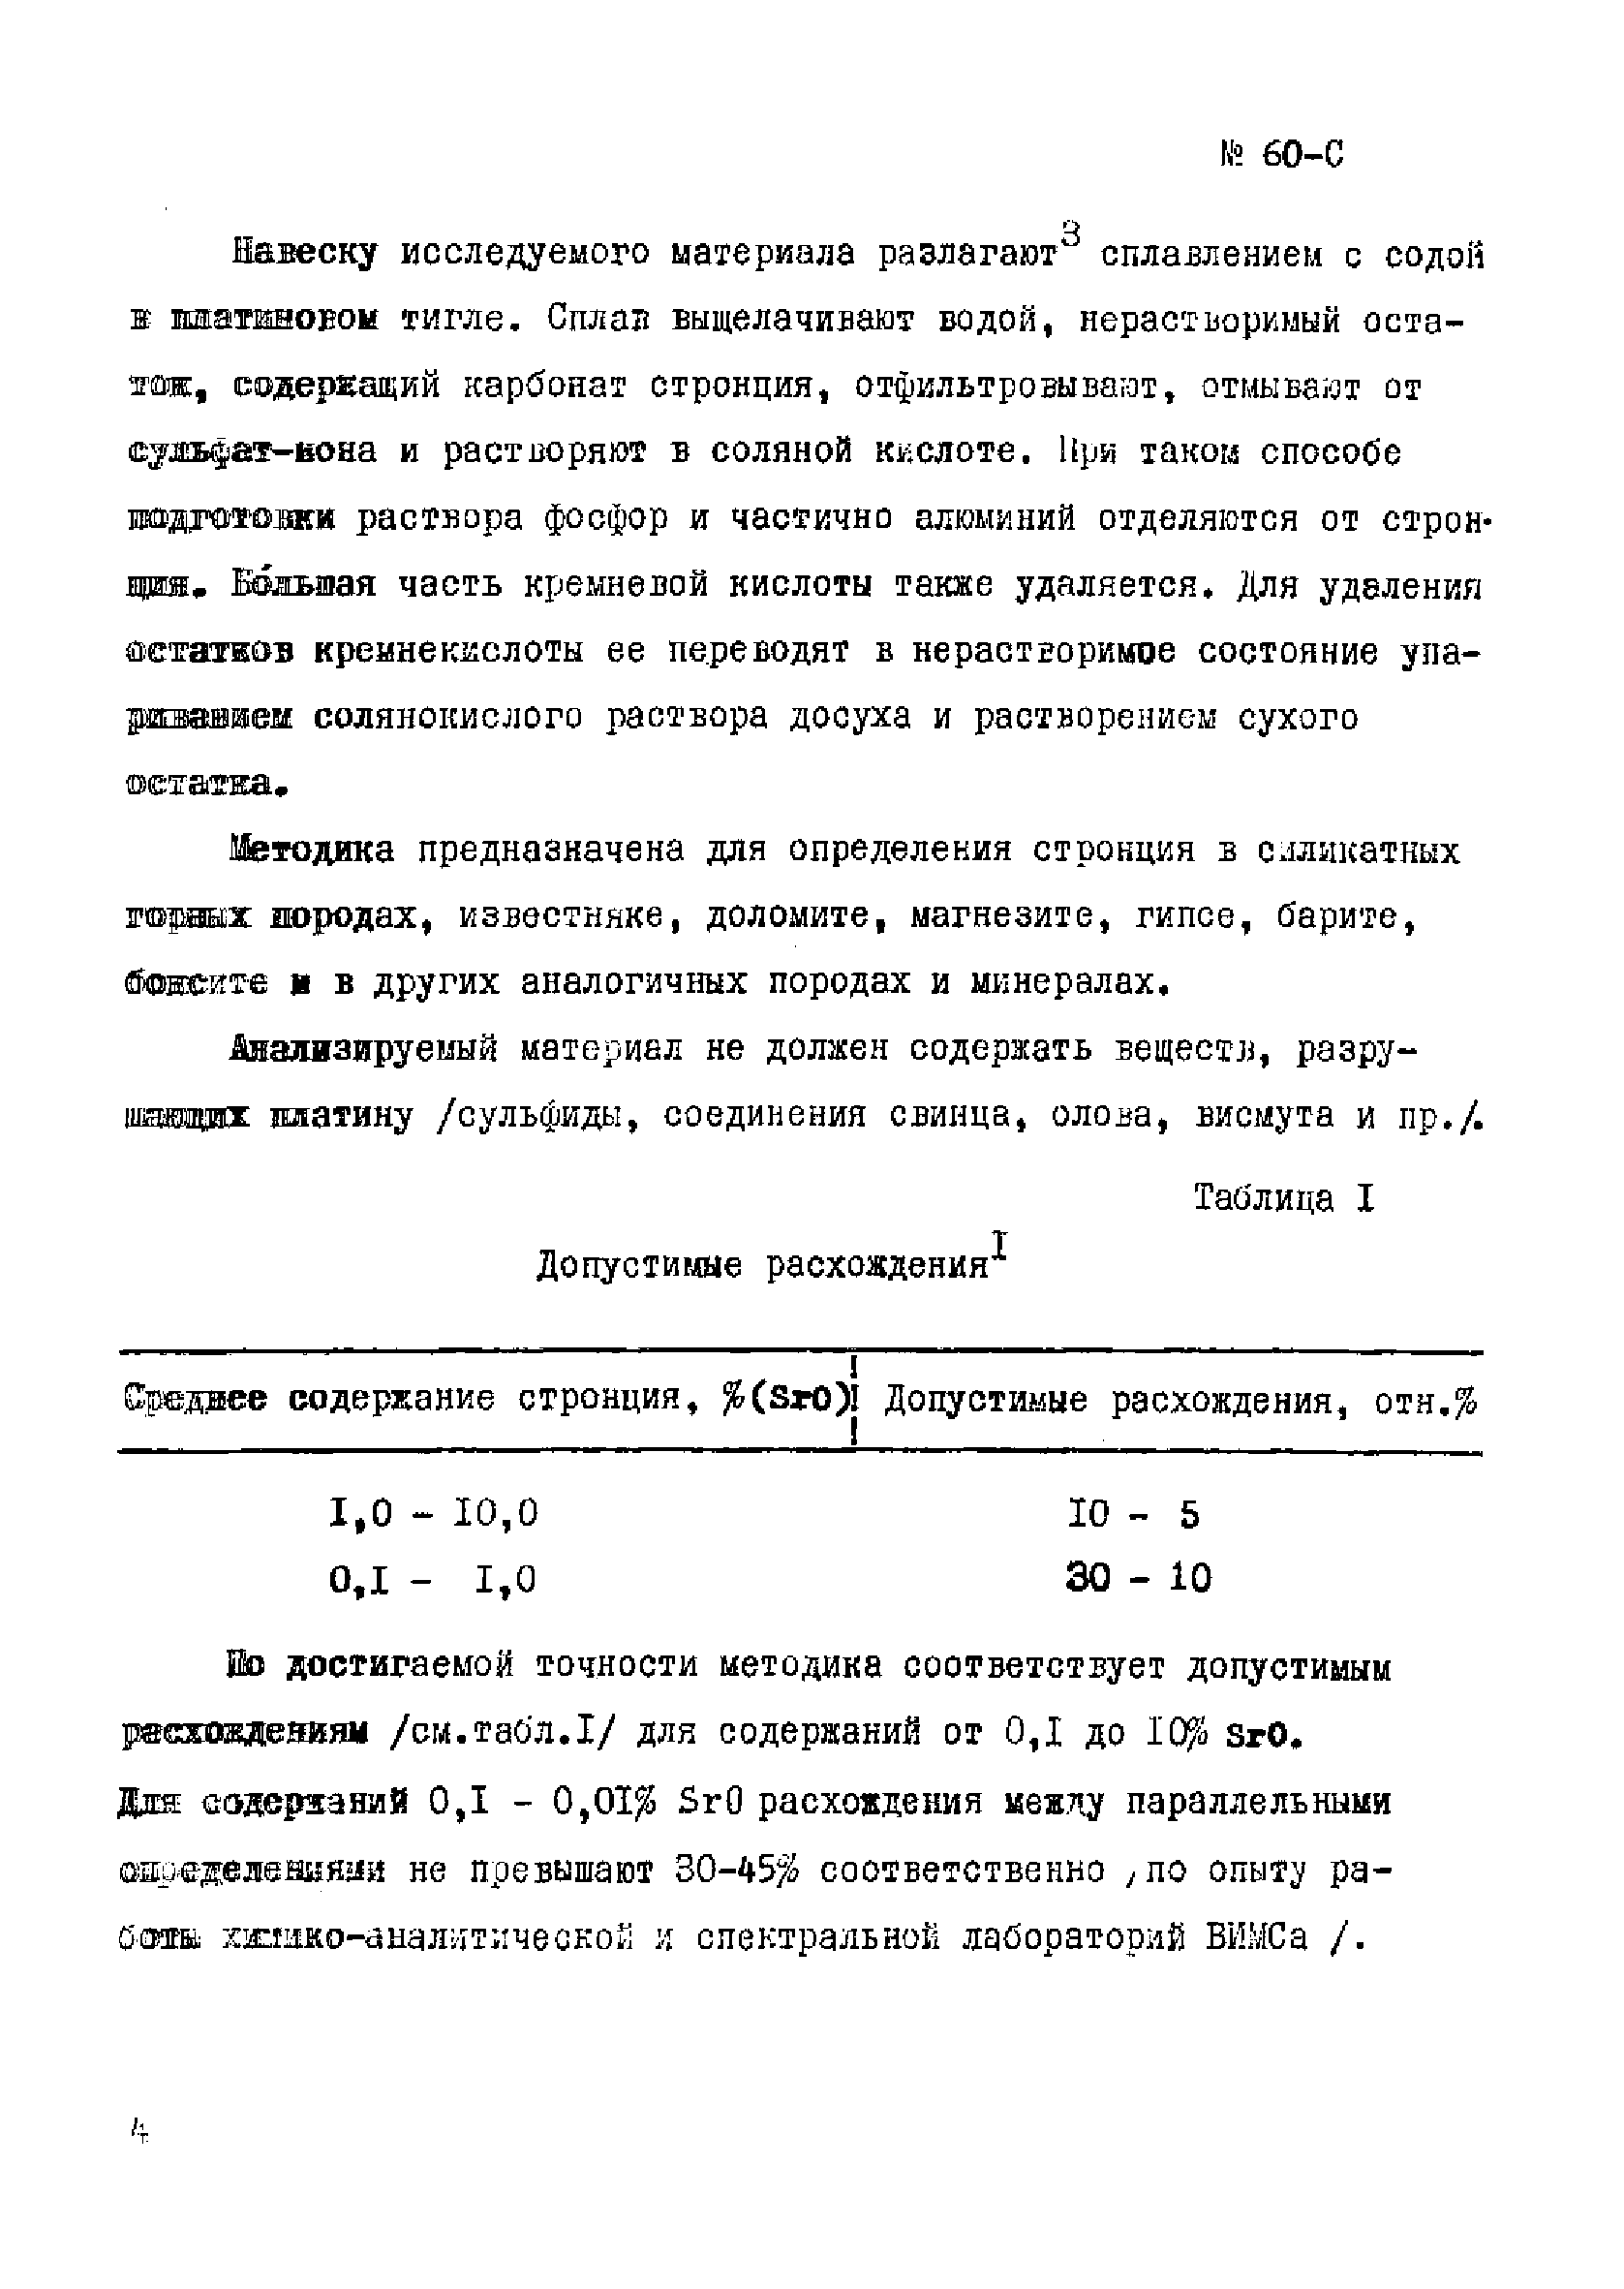 Инструкция НСАМ 60-С